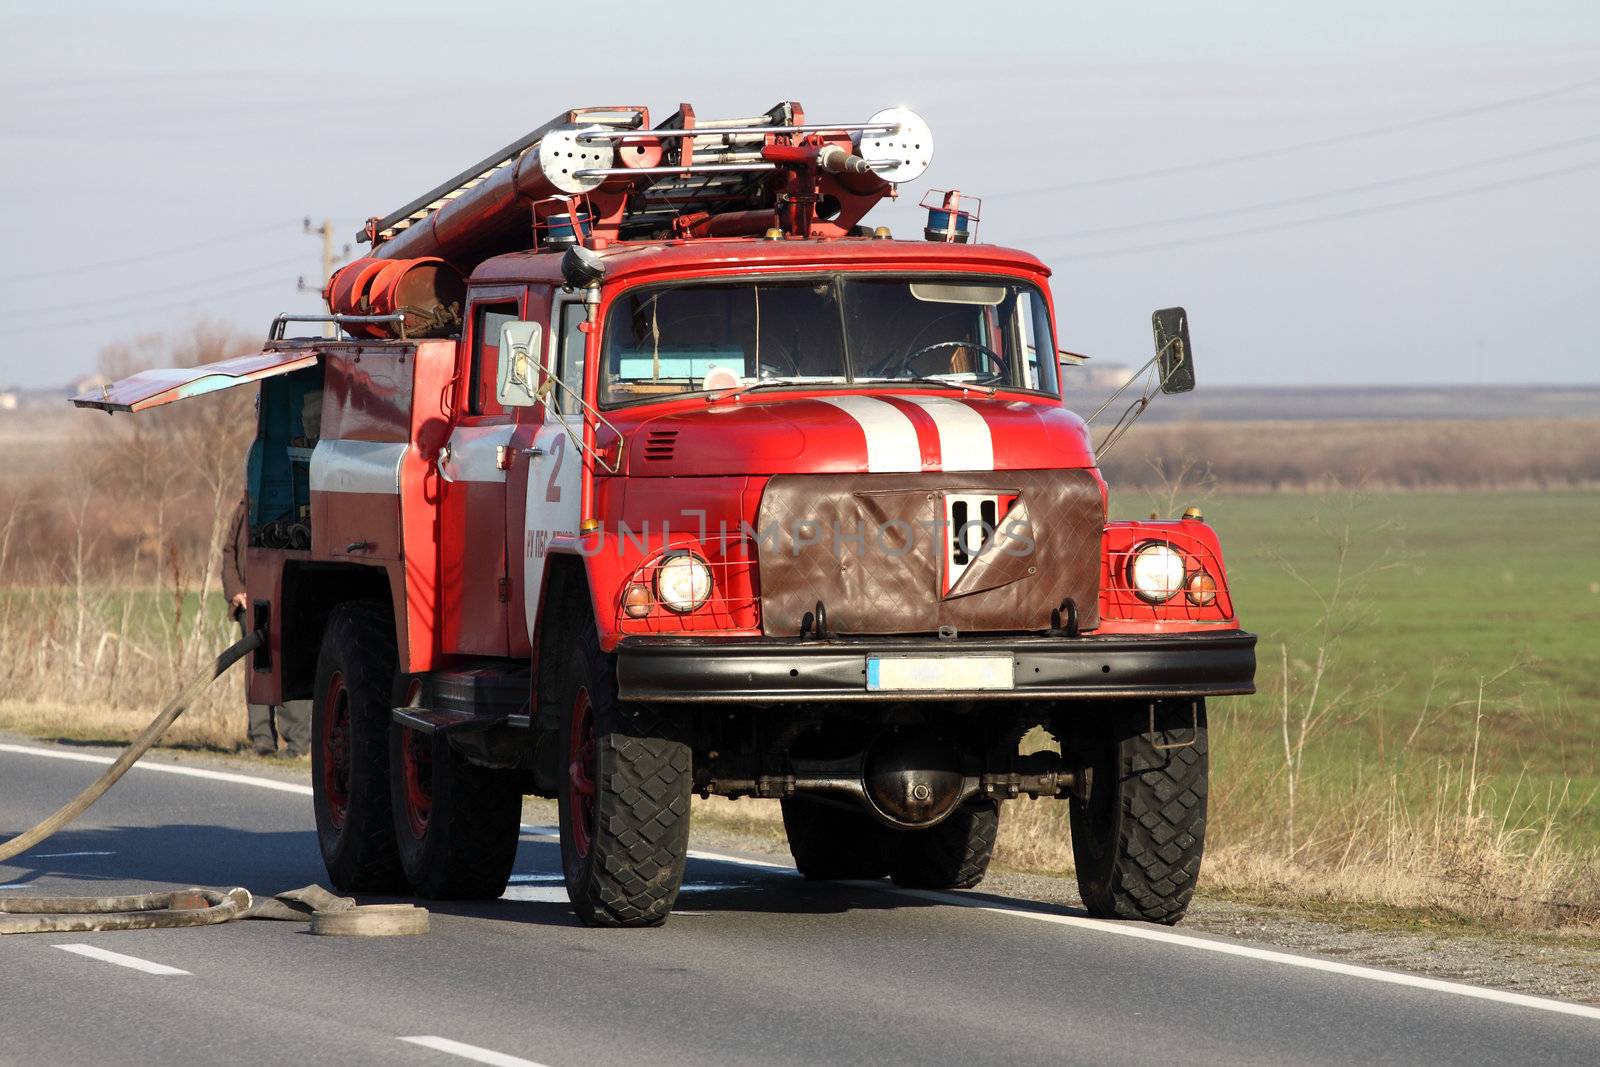 Red Fire Truck by alexkosev